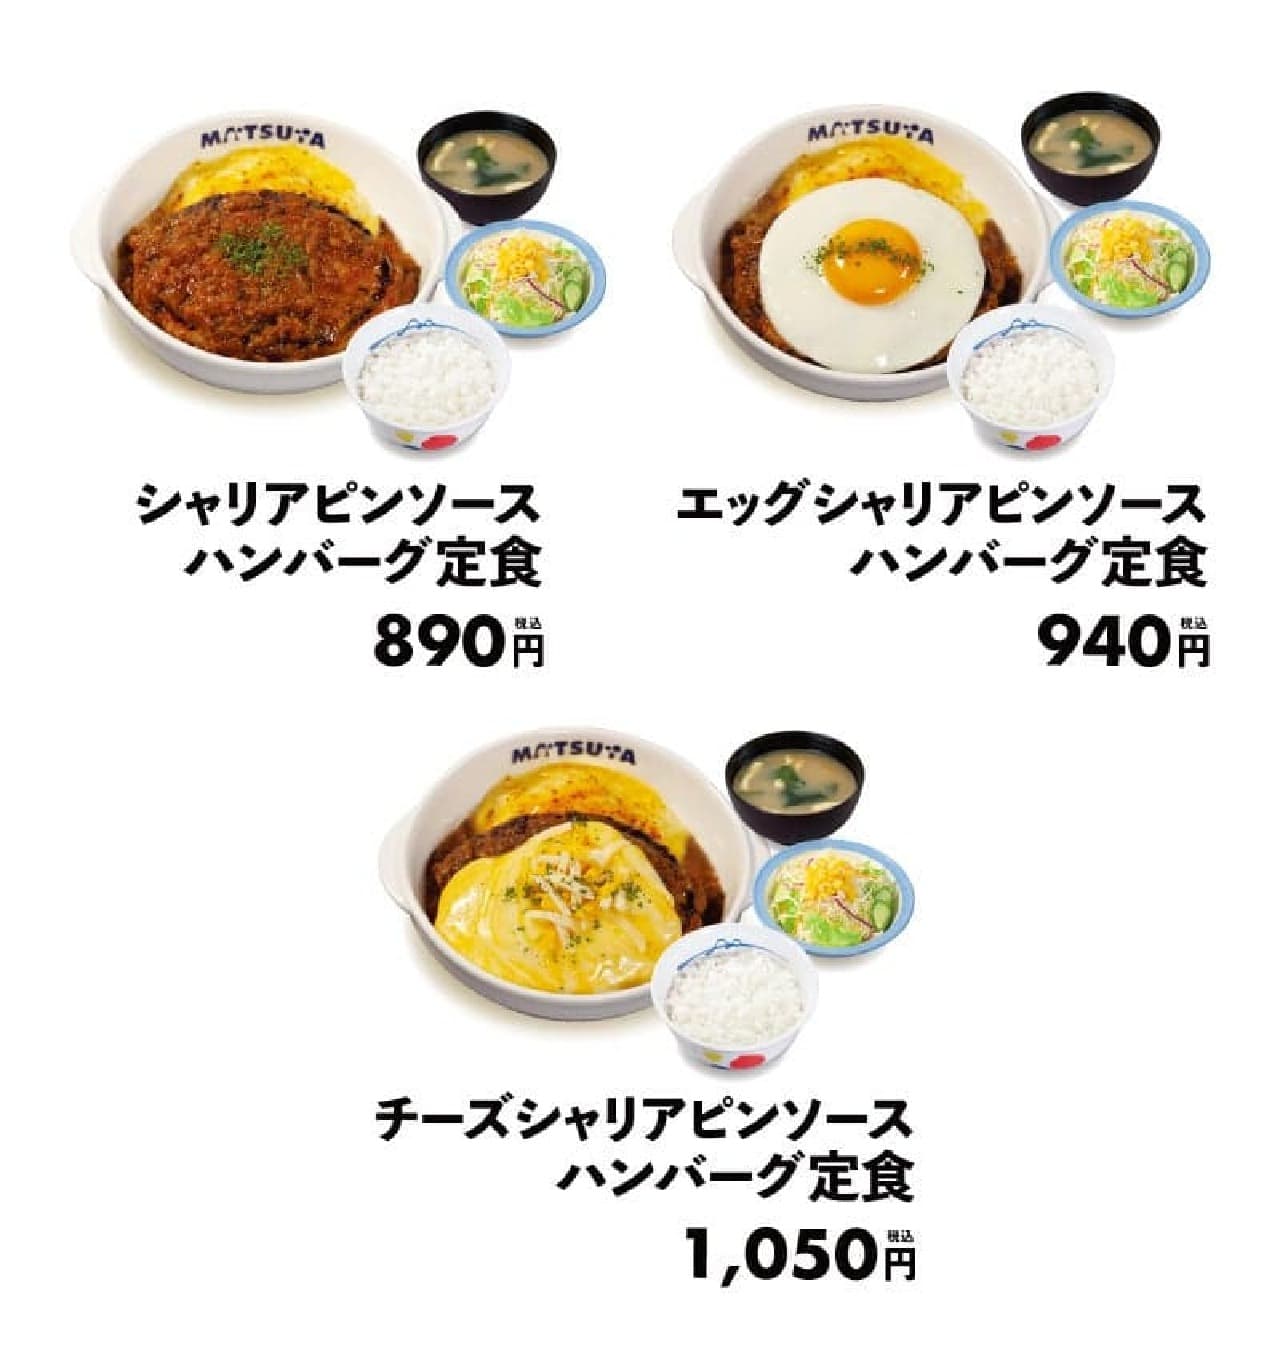 松屋から贅沢味覚「シャリアピンソースハンバーグ定食」が2月20日より全国発売、期間限定キャンペーンも同時開催 画像2